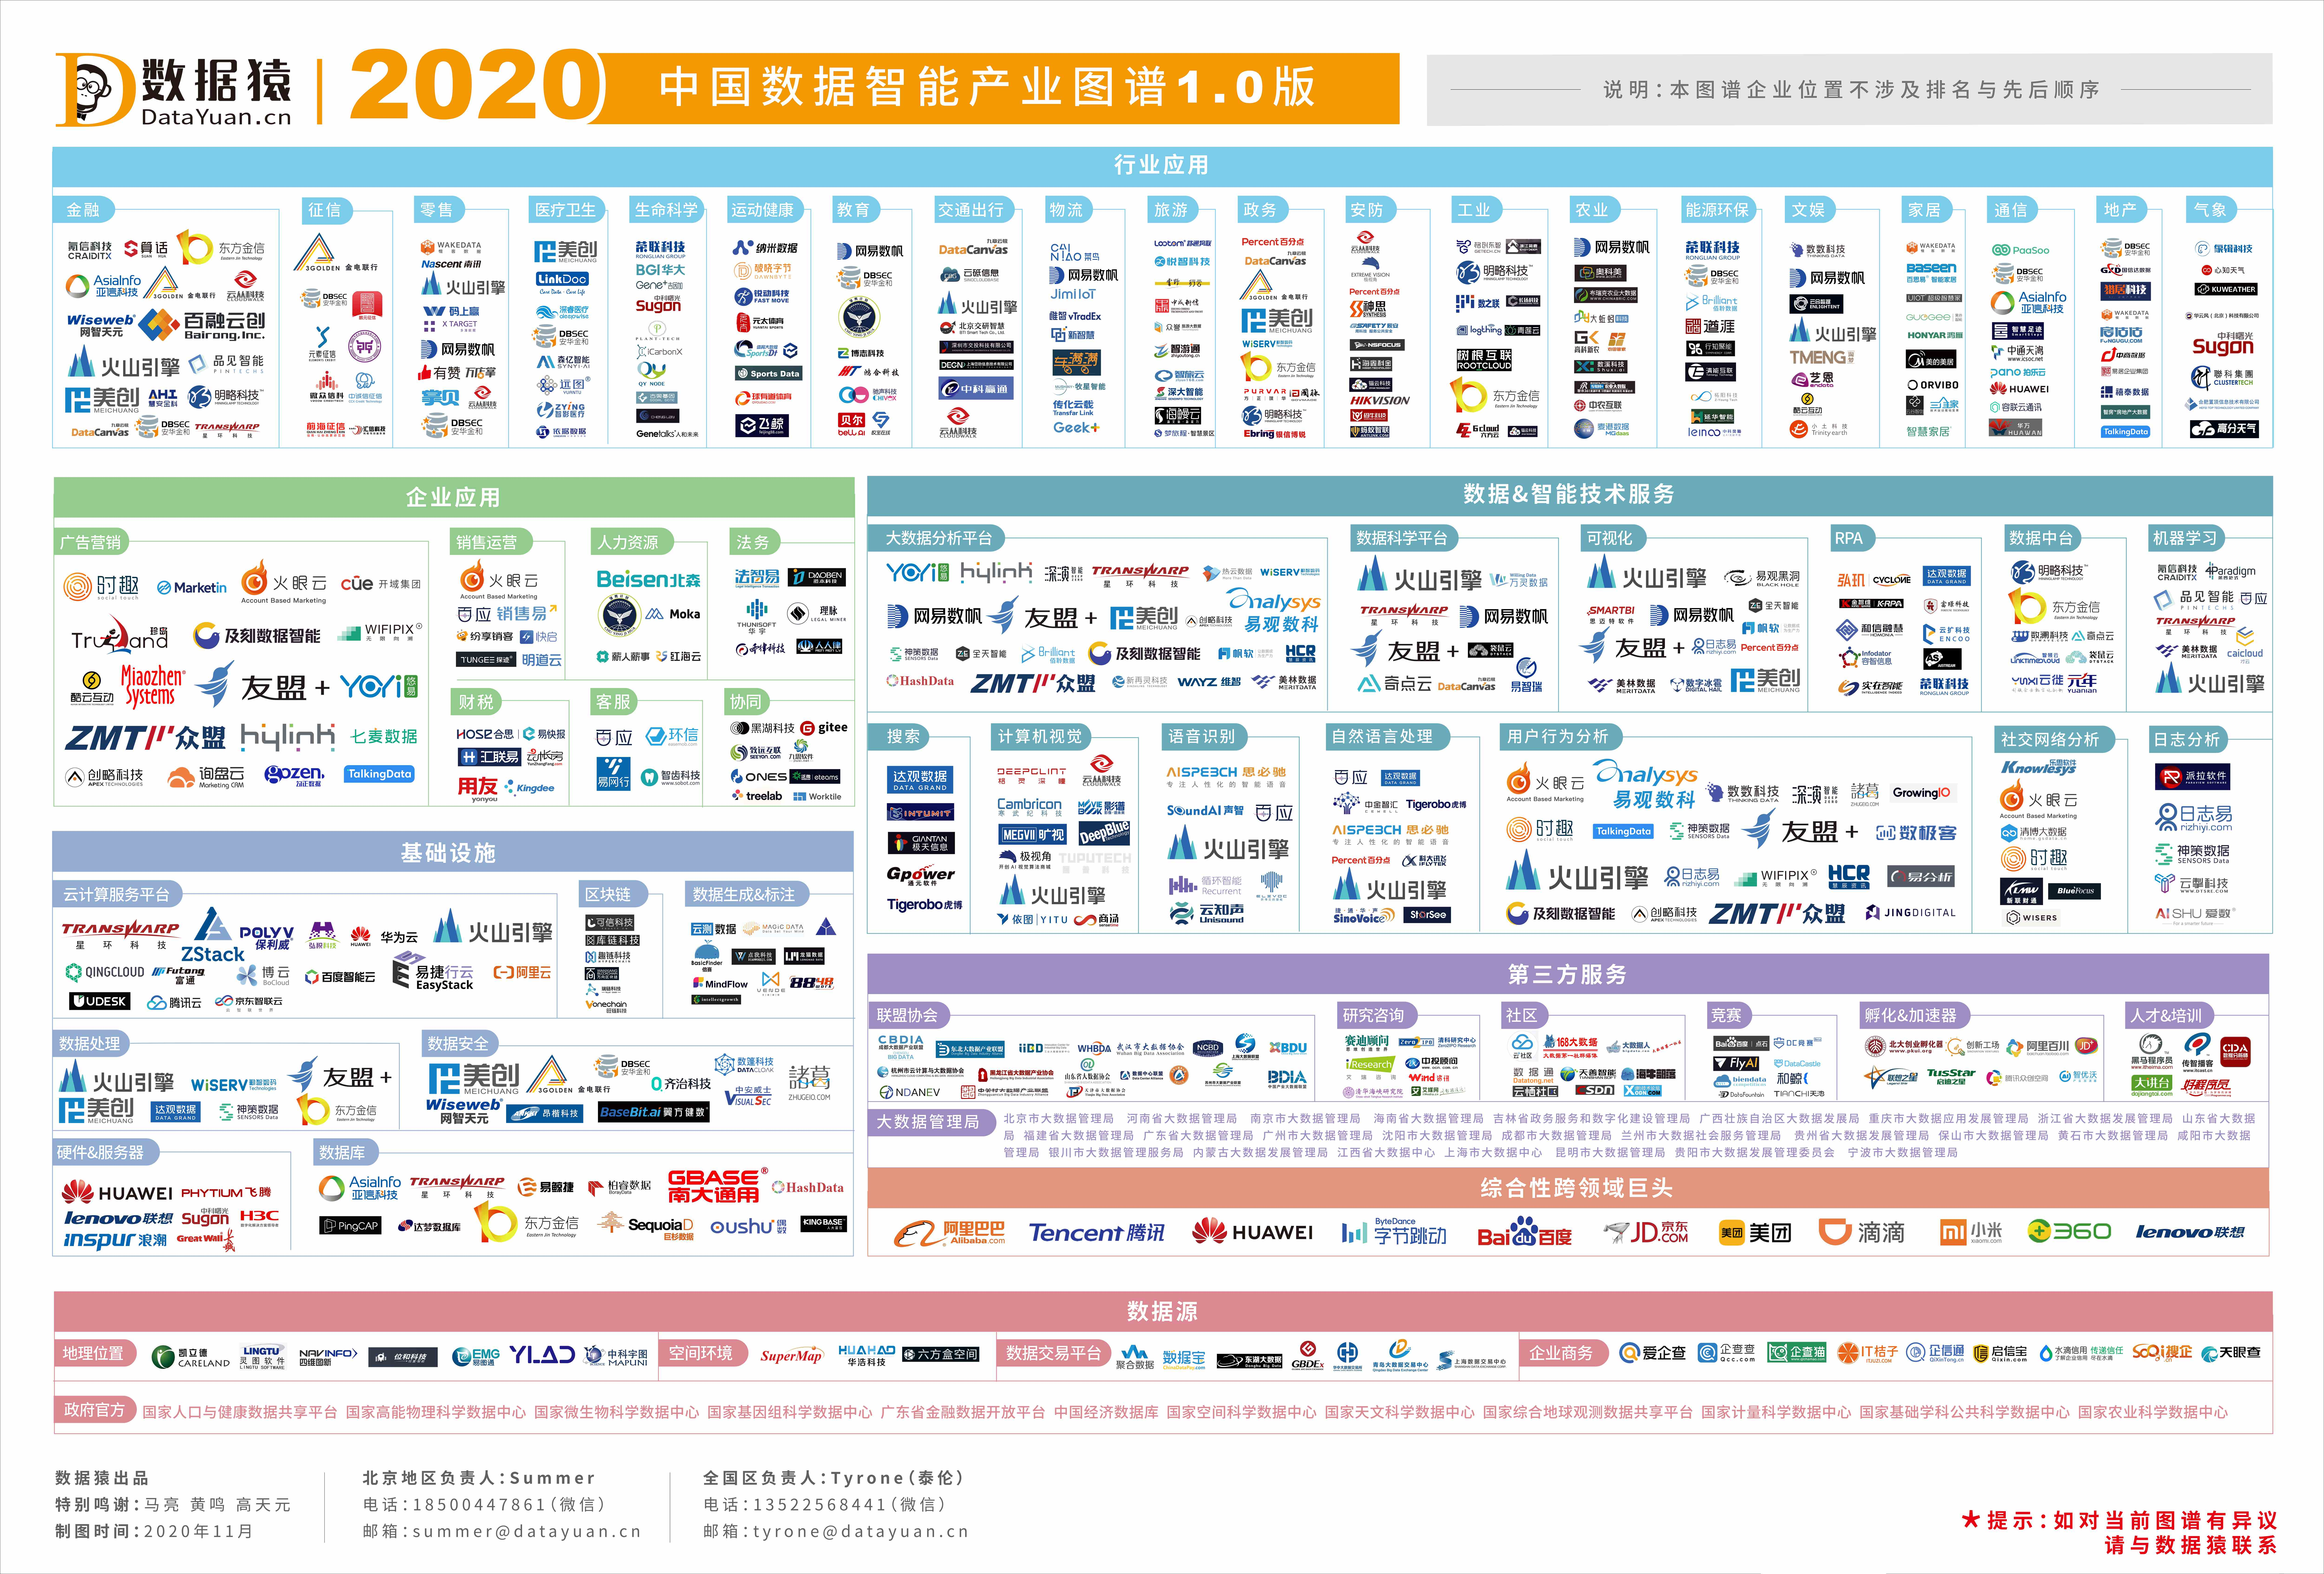 数据猿发布——2021中国数据智能产业图谱2.0升级版